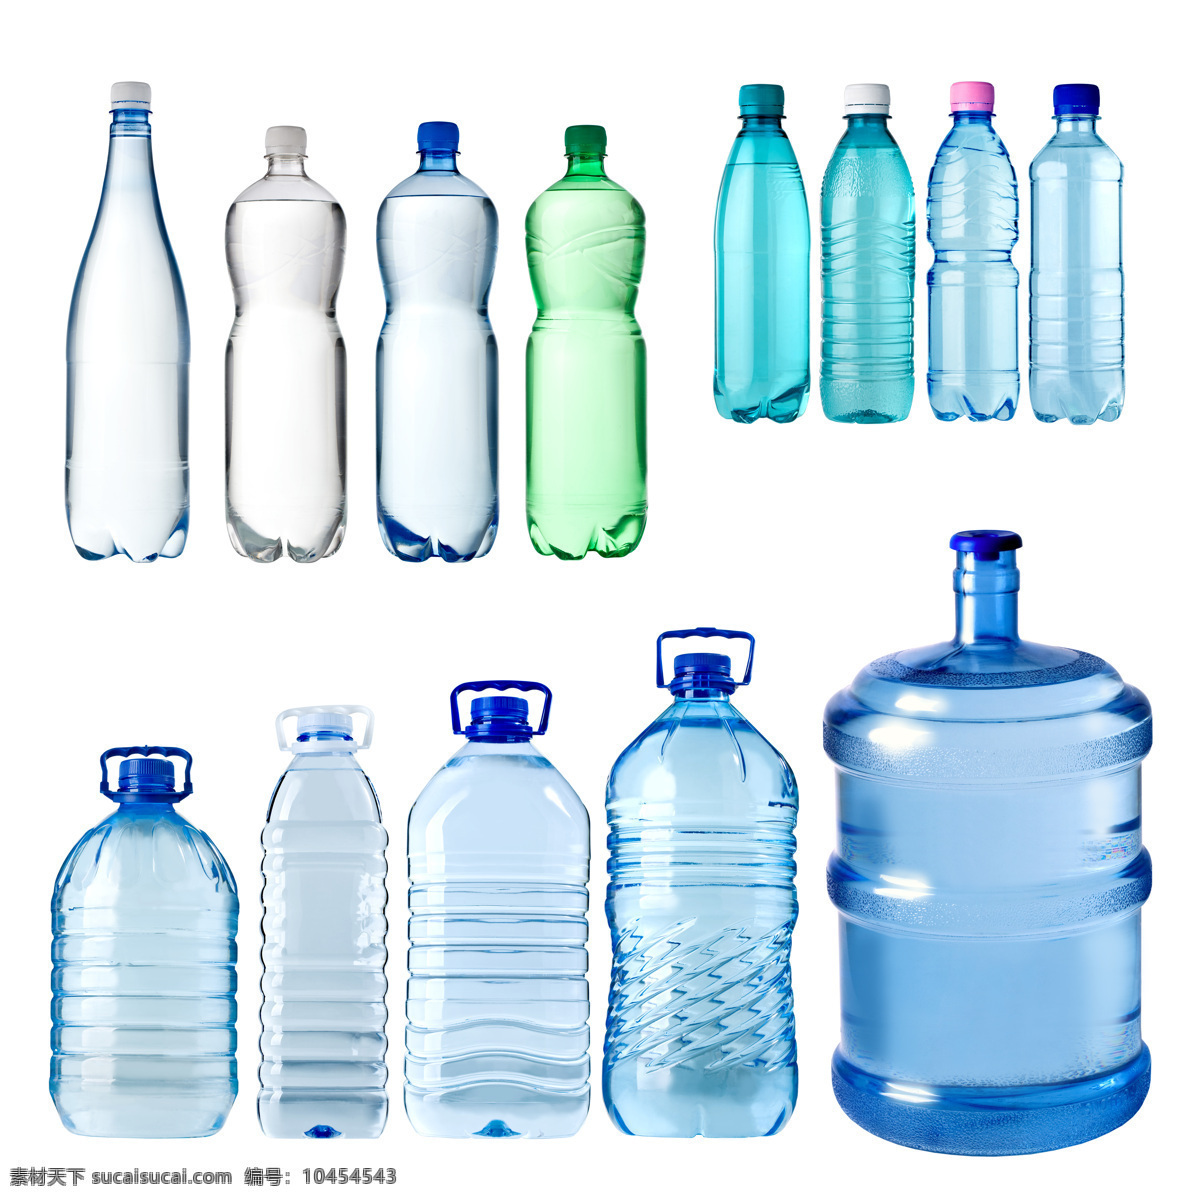 瓶装 桶装 矿泉水 蓝色 塑料瓶 冰水烈火 生活百科 白色